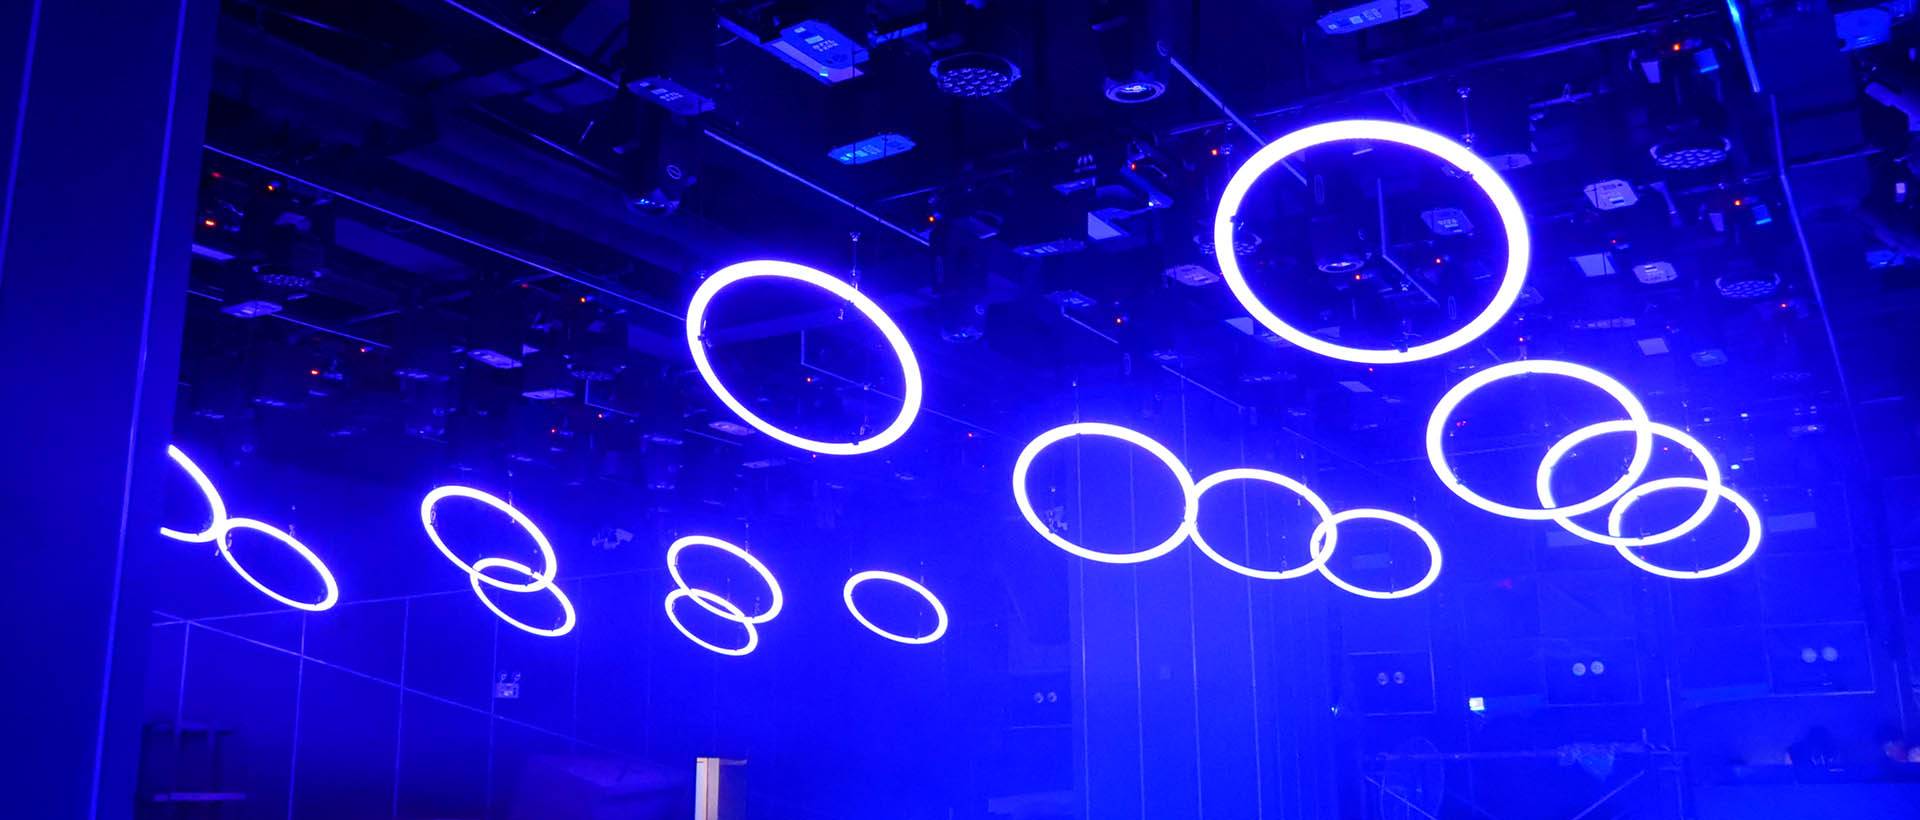 حلقه LED جنبشی 2020 برای پروژه بار سالن باشگاه (1)